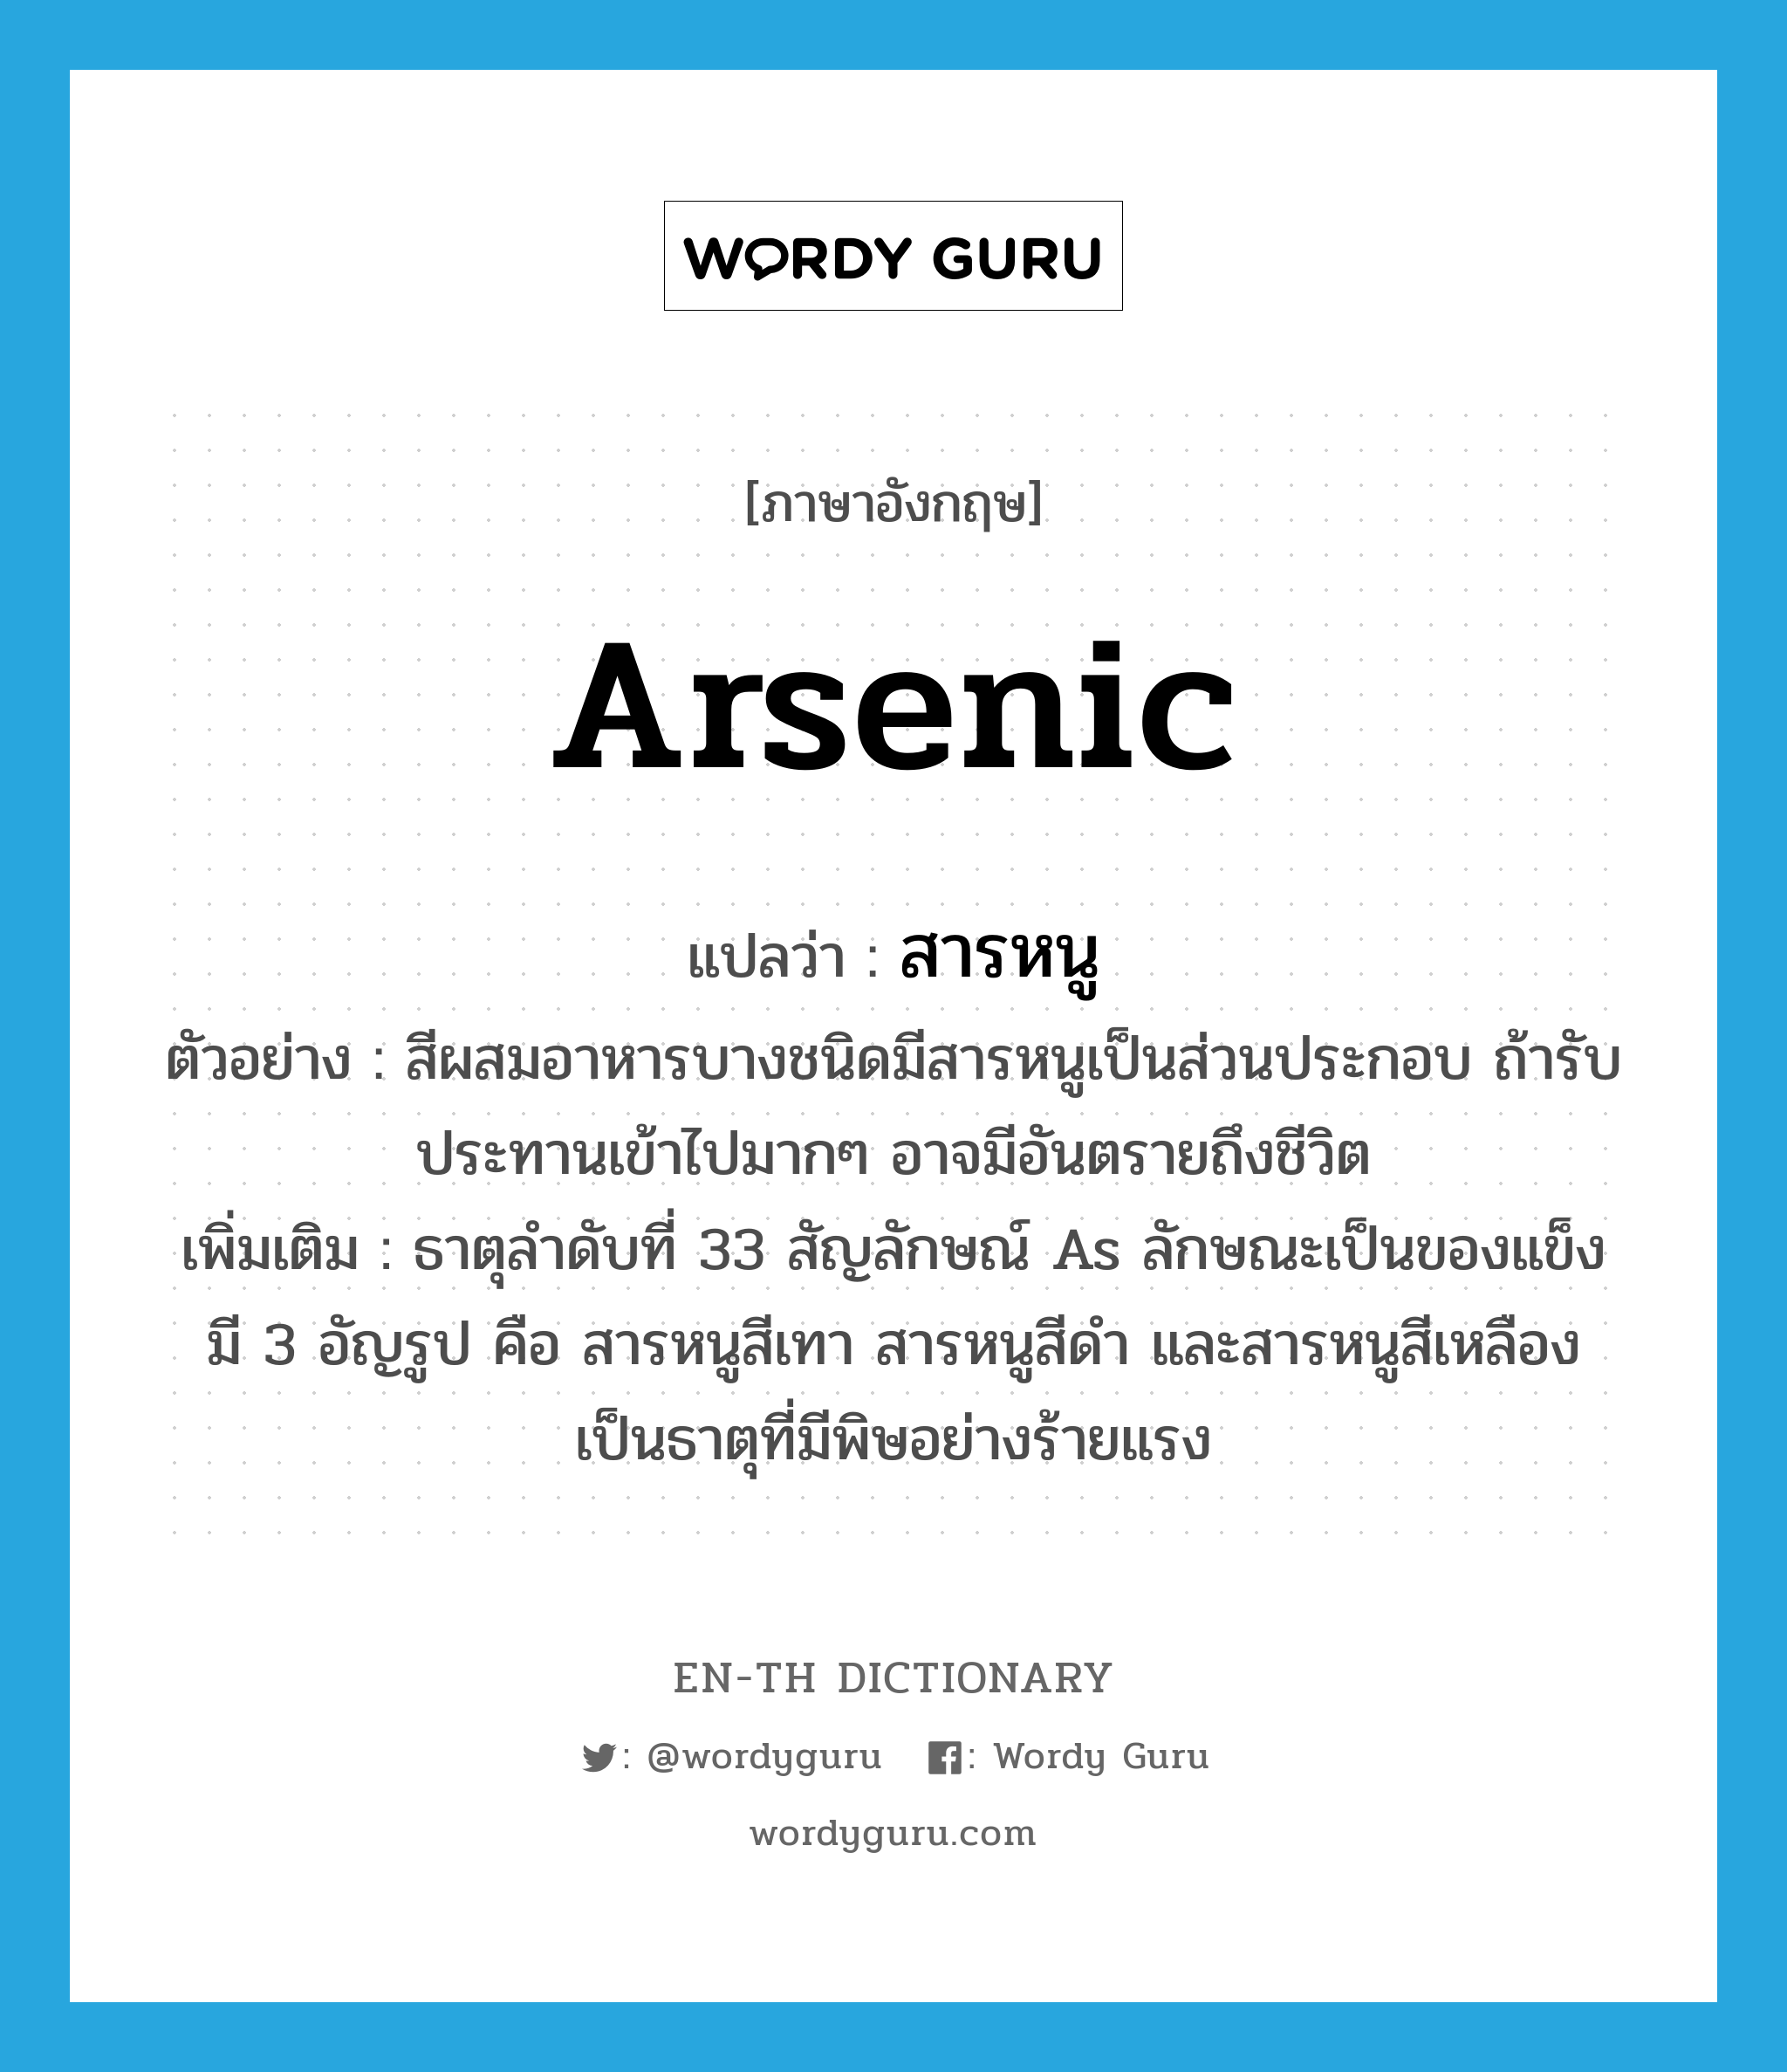 arsenic แปลว่า?, คำศัพท์ภาษาอังกฤษ arsenic แปลว่า สารหนู ประเภท N ตัวอย่าง สีผสมอาหารบางชนิดมีสารหนูเป็นส่วนประกอบ ถ้ารับประทานเข้าไปมากๆ อาจมีอันตรายถึงชีวิต เพิ่มเติม ธาตุลำดับที่ 33 สัญลักษณ์ As ลักษณะเป็นของแข็ง มี 3 อัญรูป คือ สารหนูสีเทา สารหนูสีดำ และสารหนูสีเหลือง เป็นธาตุที่มีพิษอย่างร้ายแรง หมวด N